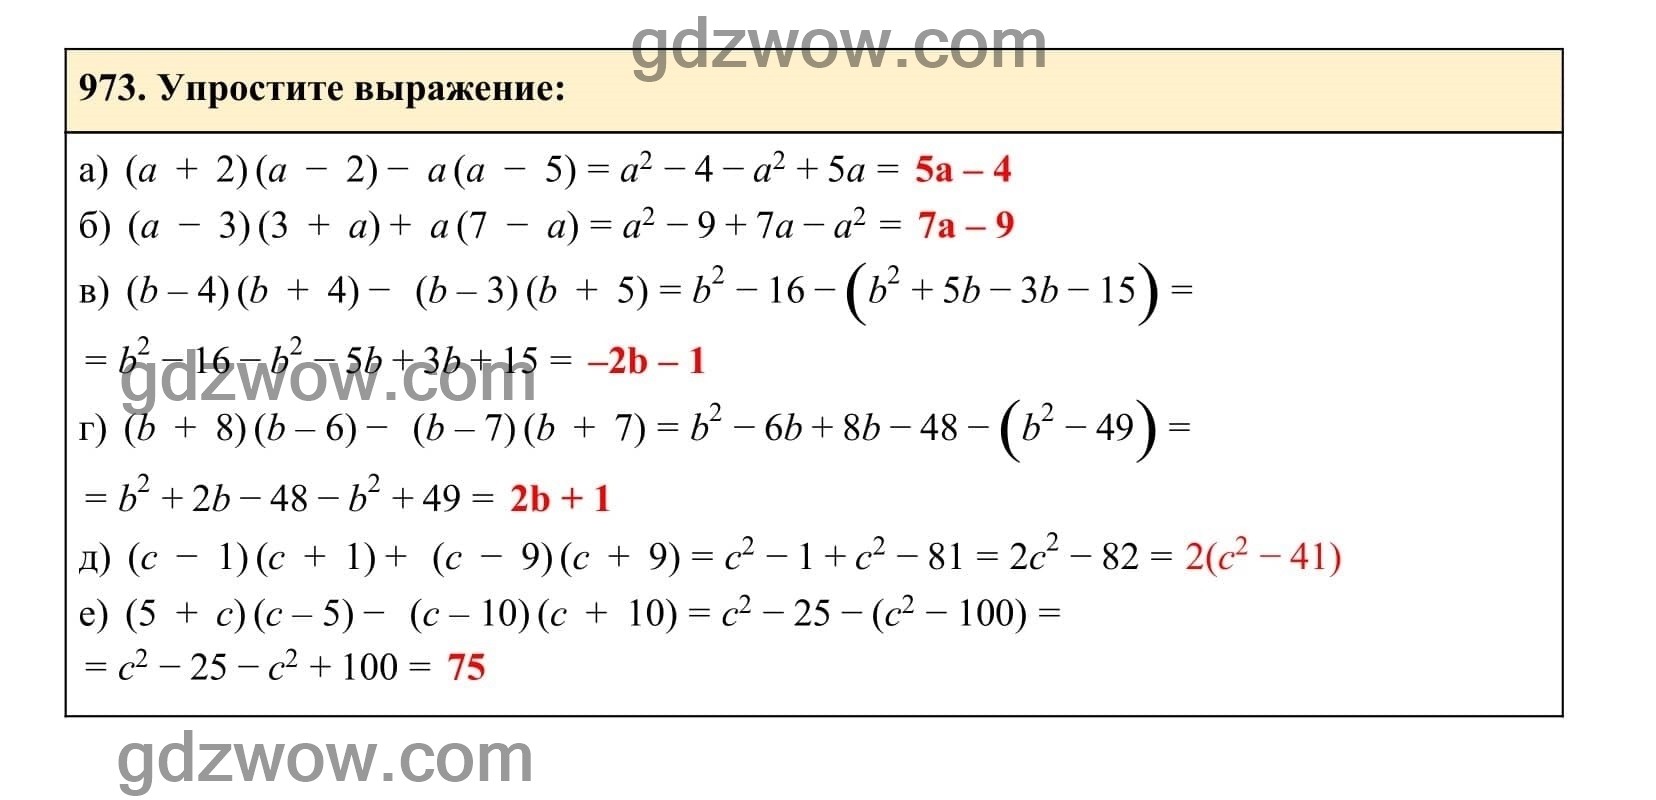 Упражнение 973 - ГДЗ по Алгебре 7 класс Учебник Макарычев (решебник) - GDZwow